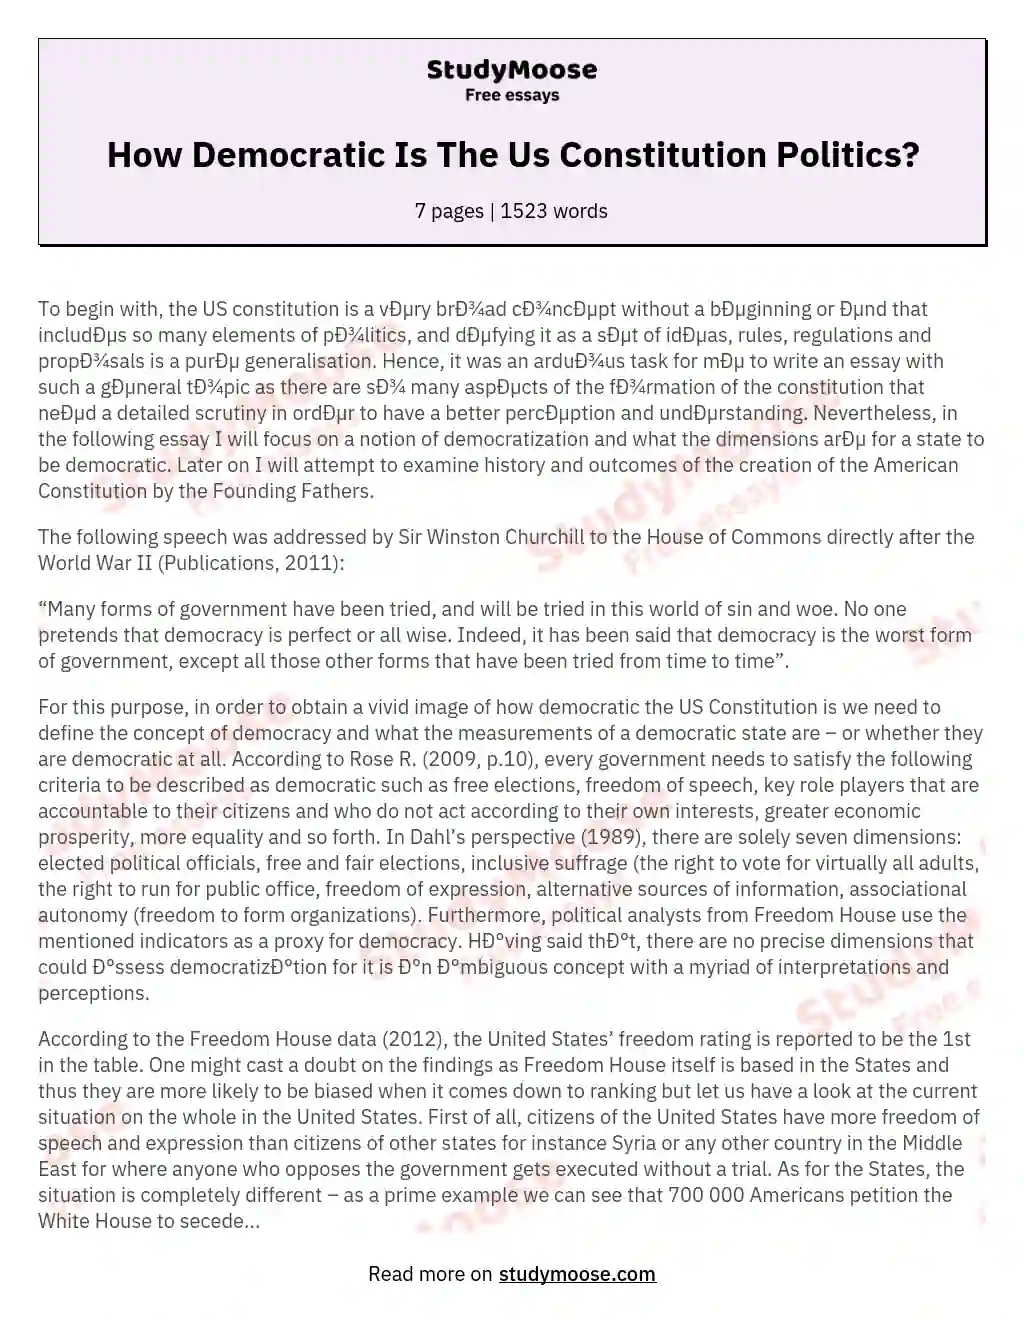 How Democratic Is The Us Constitution Politics? essay